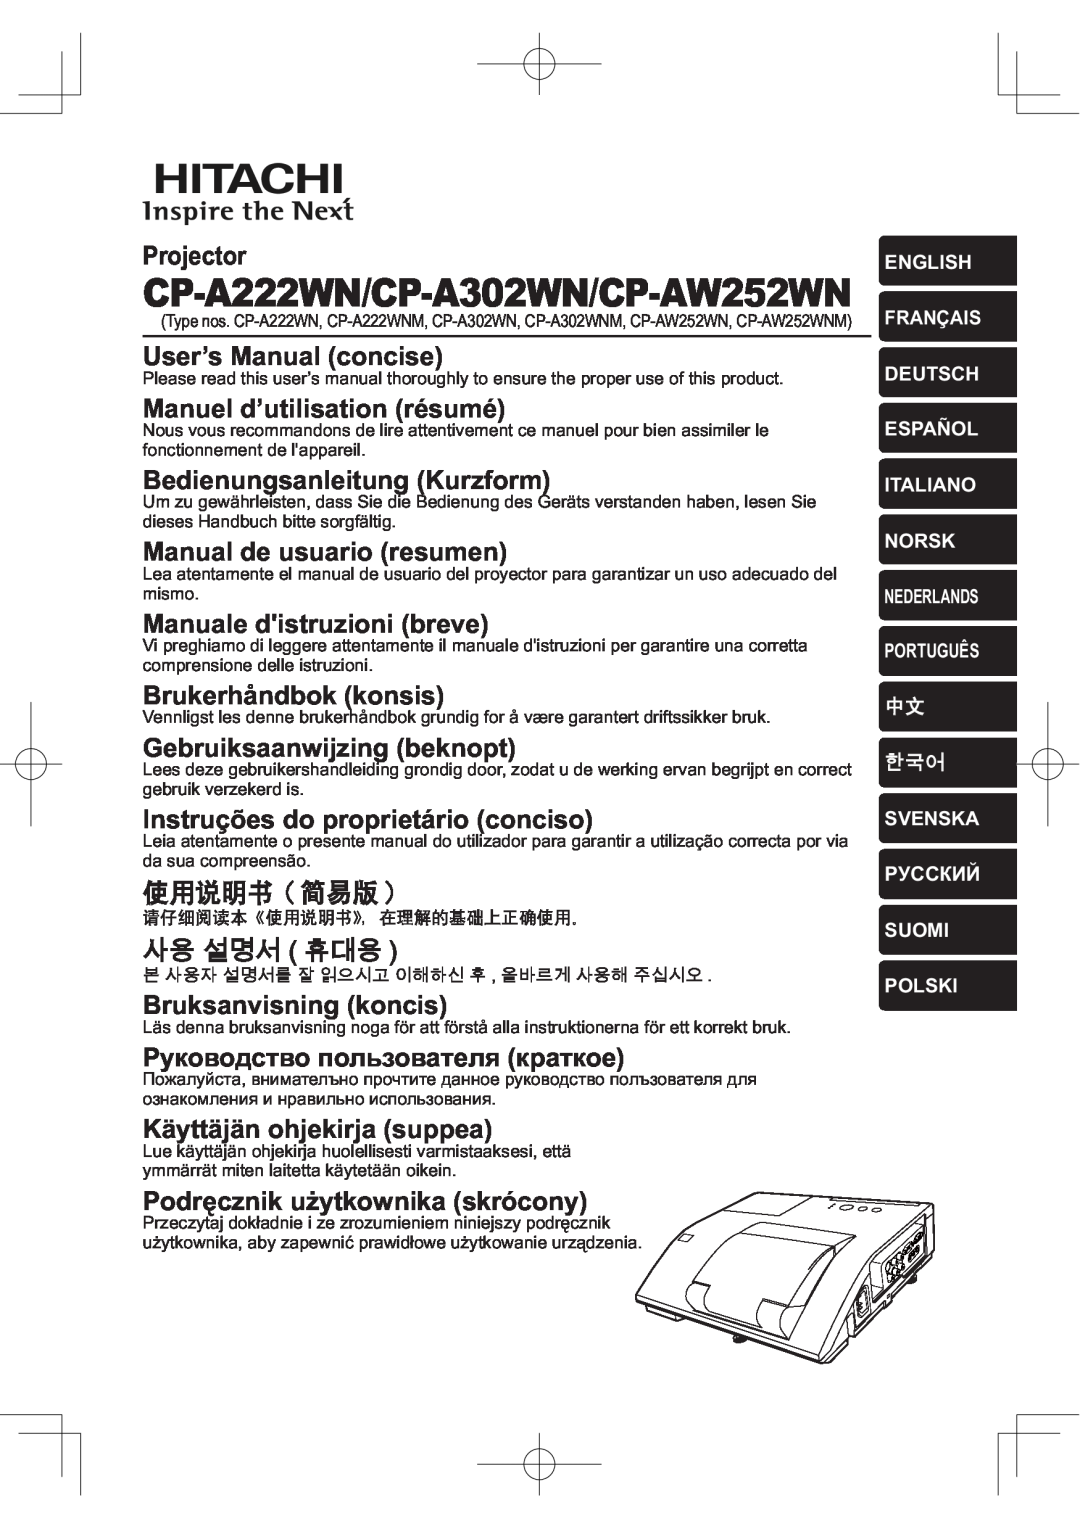 Hitachi manual CP-A222WN/CP-A302WN/CP-AW252WN,   